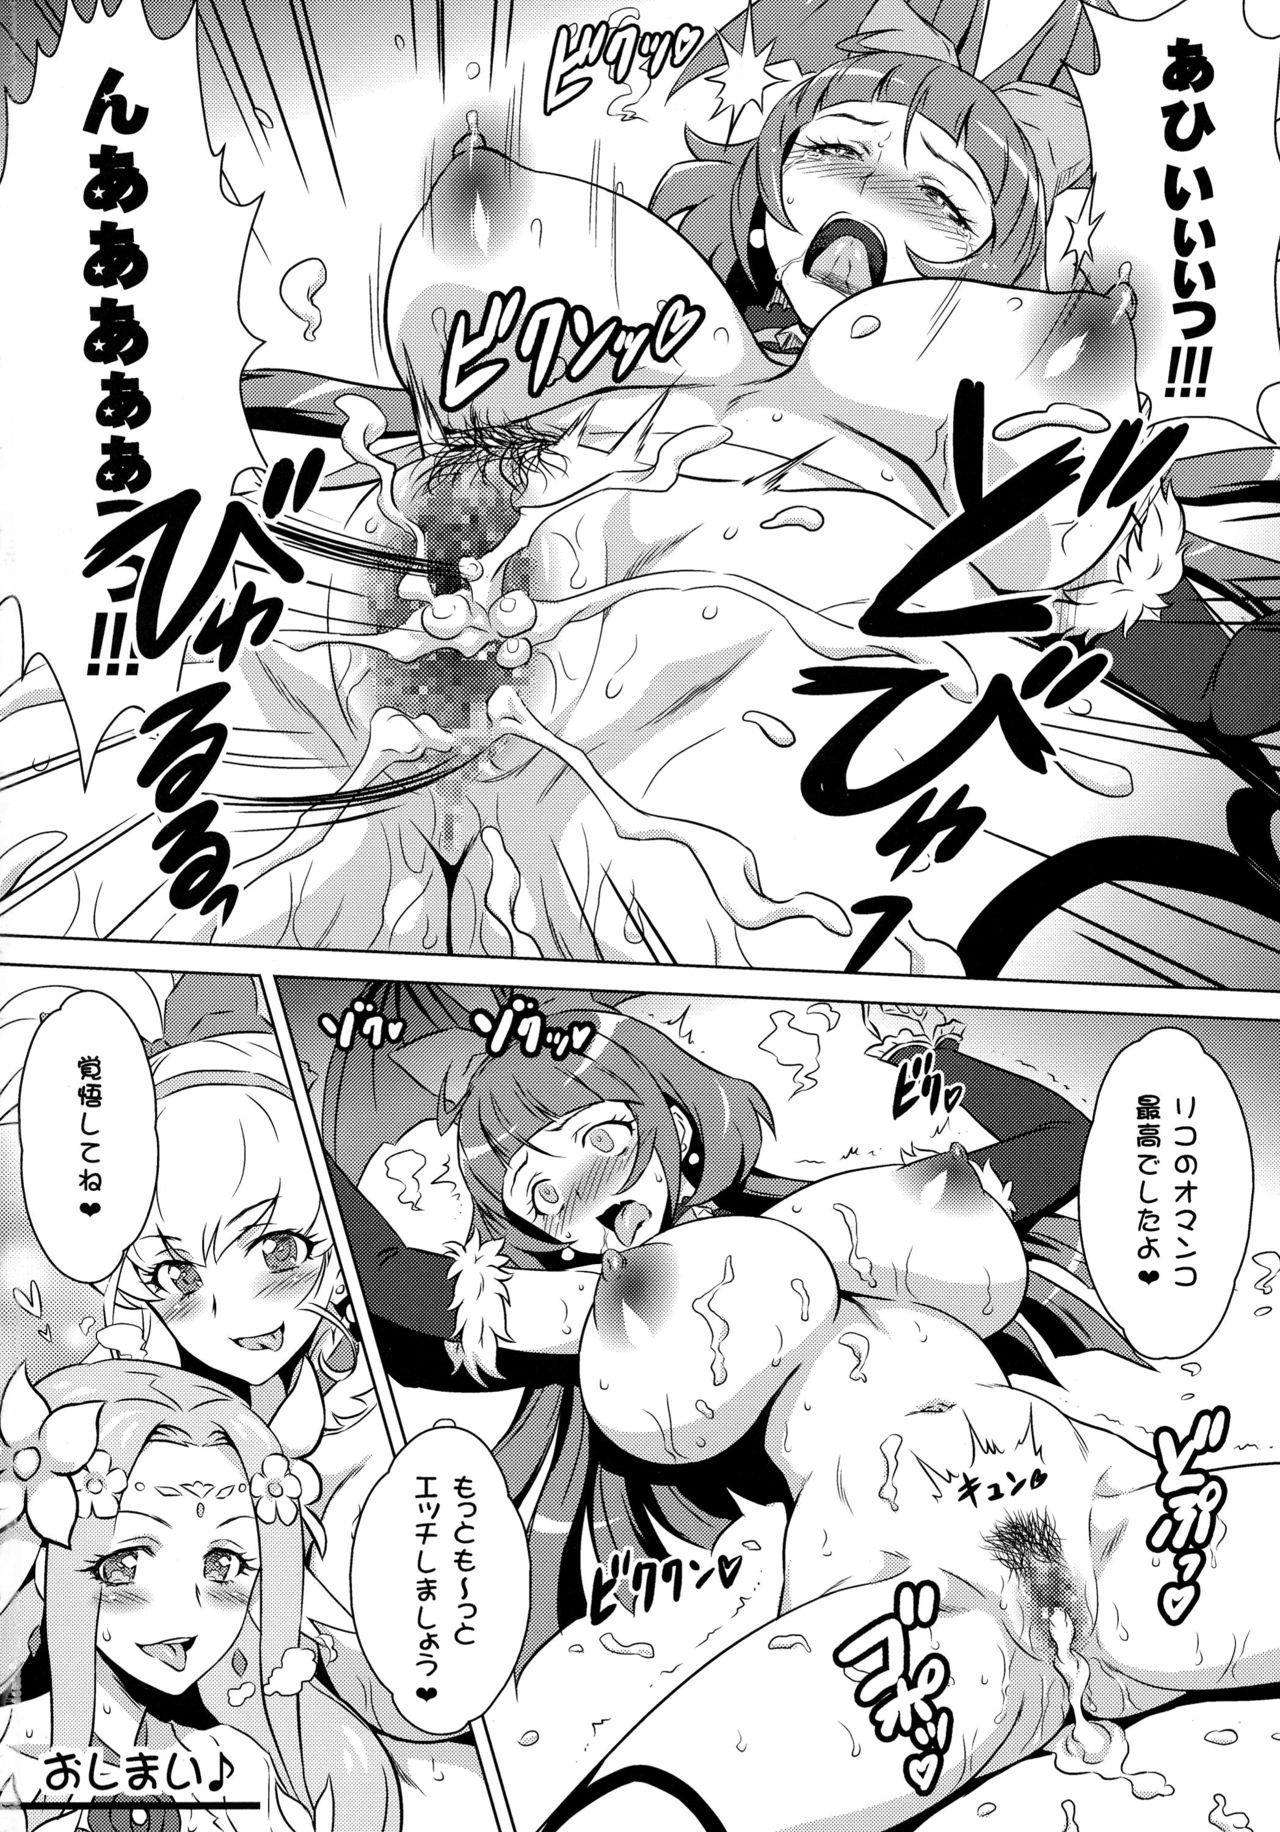 Outdoors Yorokobi no Kuni Vol. 28 Futari no Seiki Futanari Mahou - Maho girls precure Rough Sex - Page 18